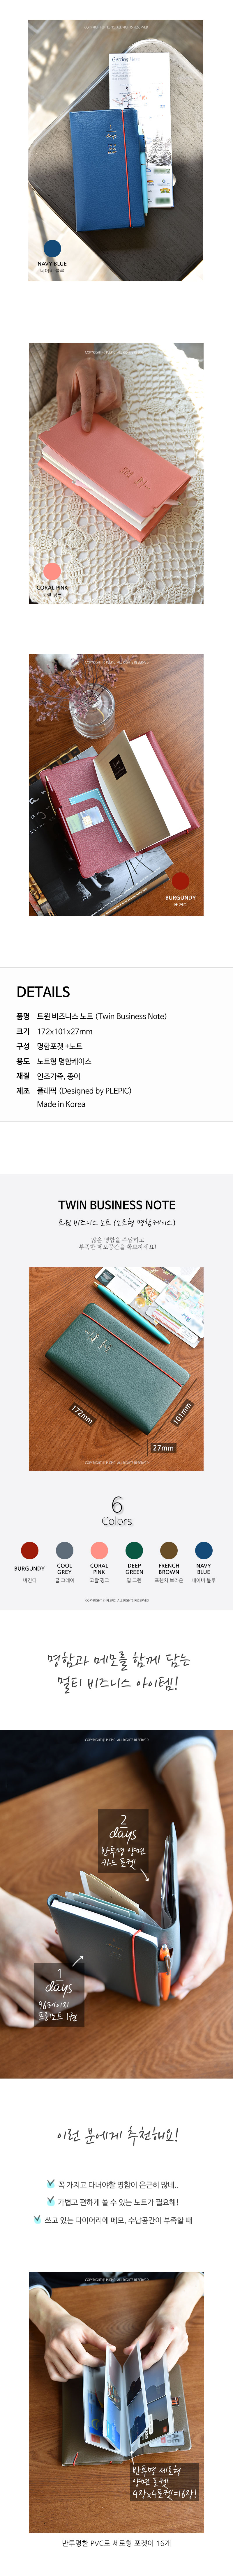 Twin Business Note 12,000원 - 플레픽 디자인문구, 개인소품, 명함지갑/케이스, 디자인명함지갑 바보사랑 Twin Business Note 12,000원 - 플레픽 디자인문구, 개인소품, 명함지갑/케이스, 디자인명함지갑 바보사랑